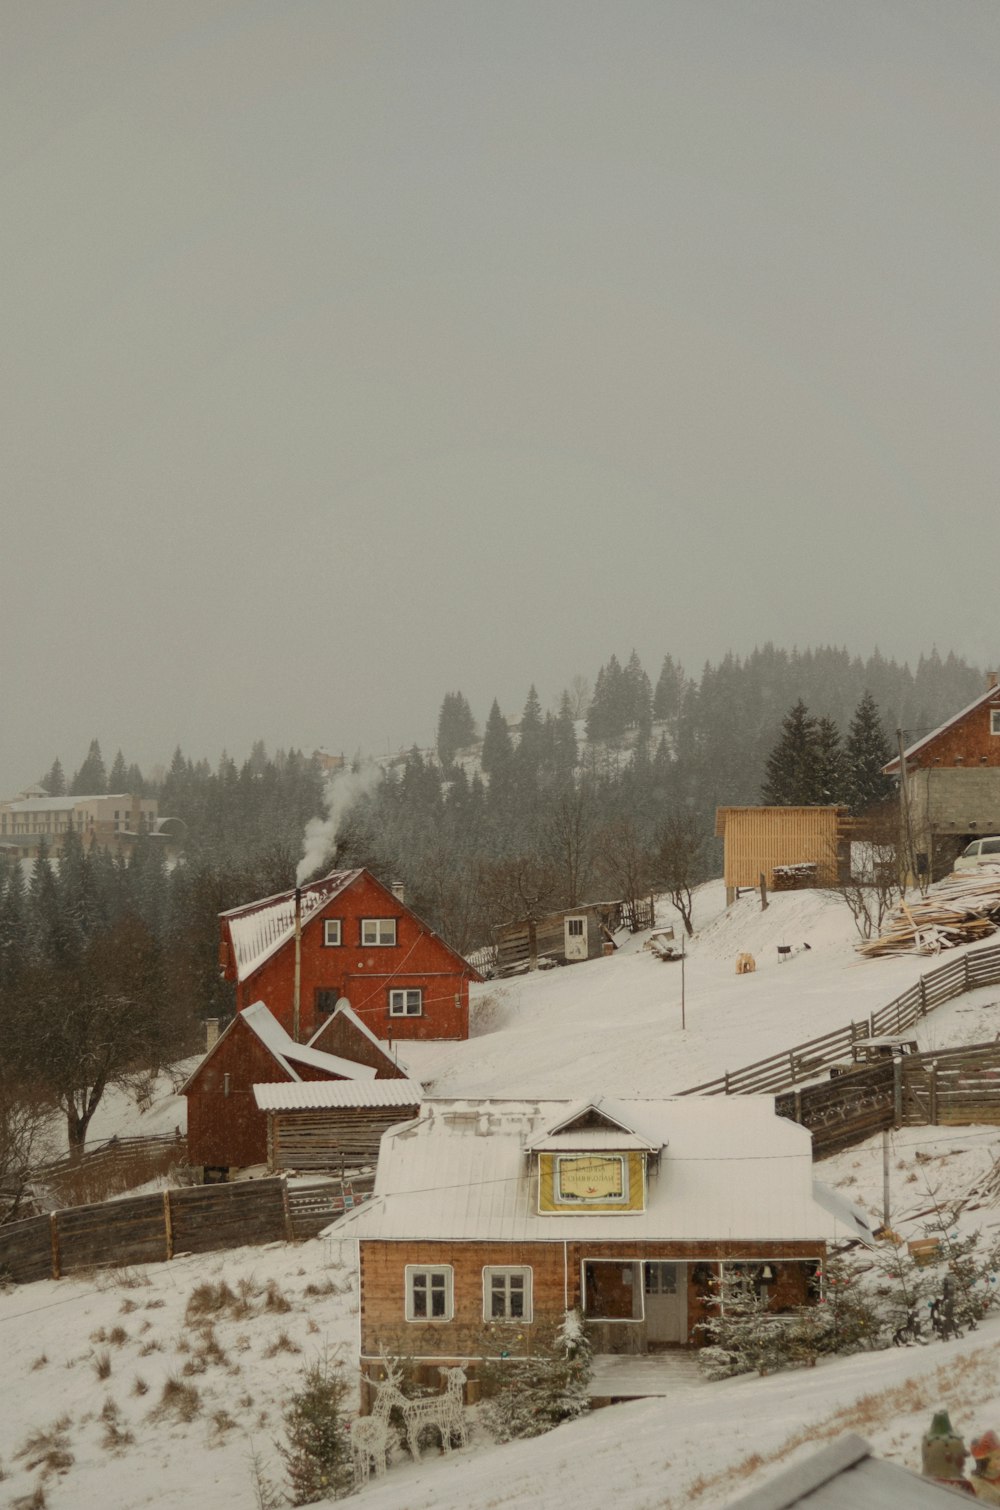 uma encosta coberta de neve com casas e árvores